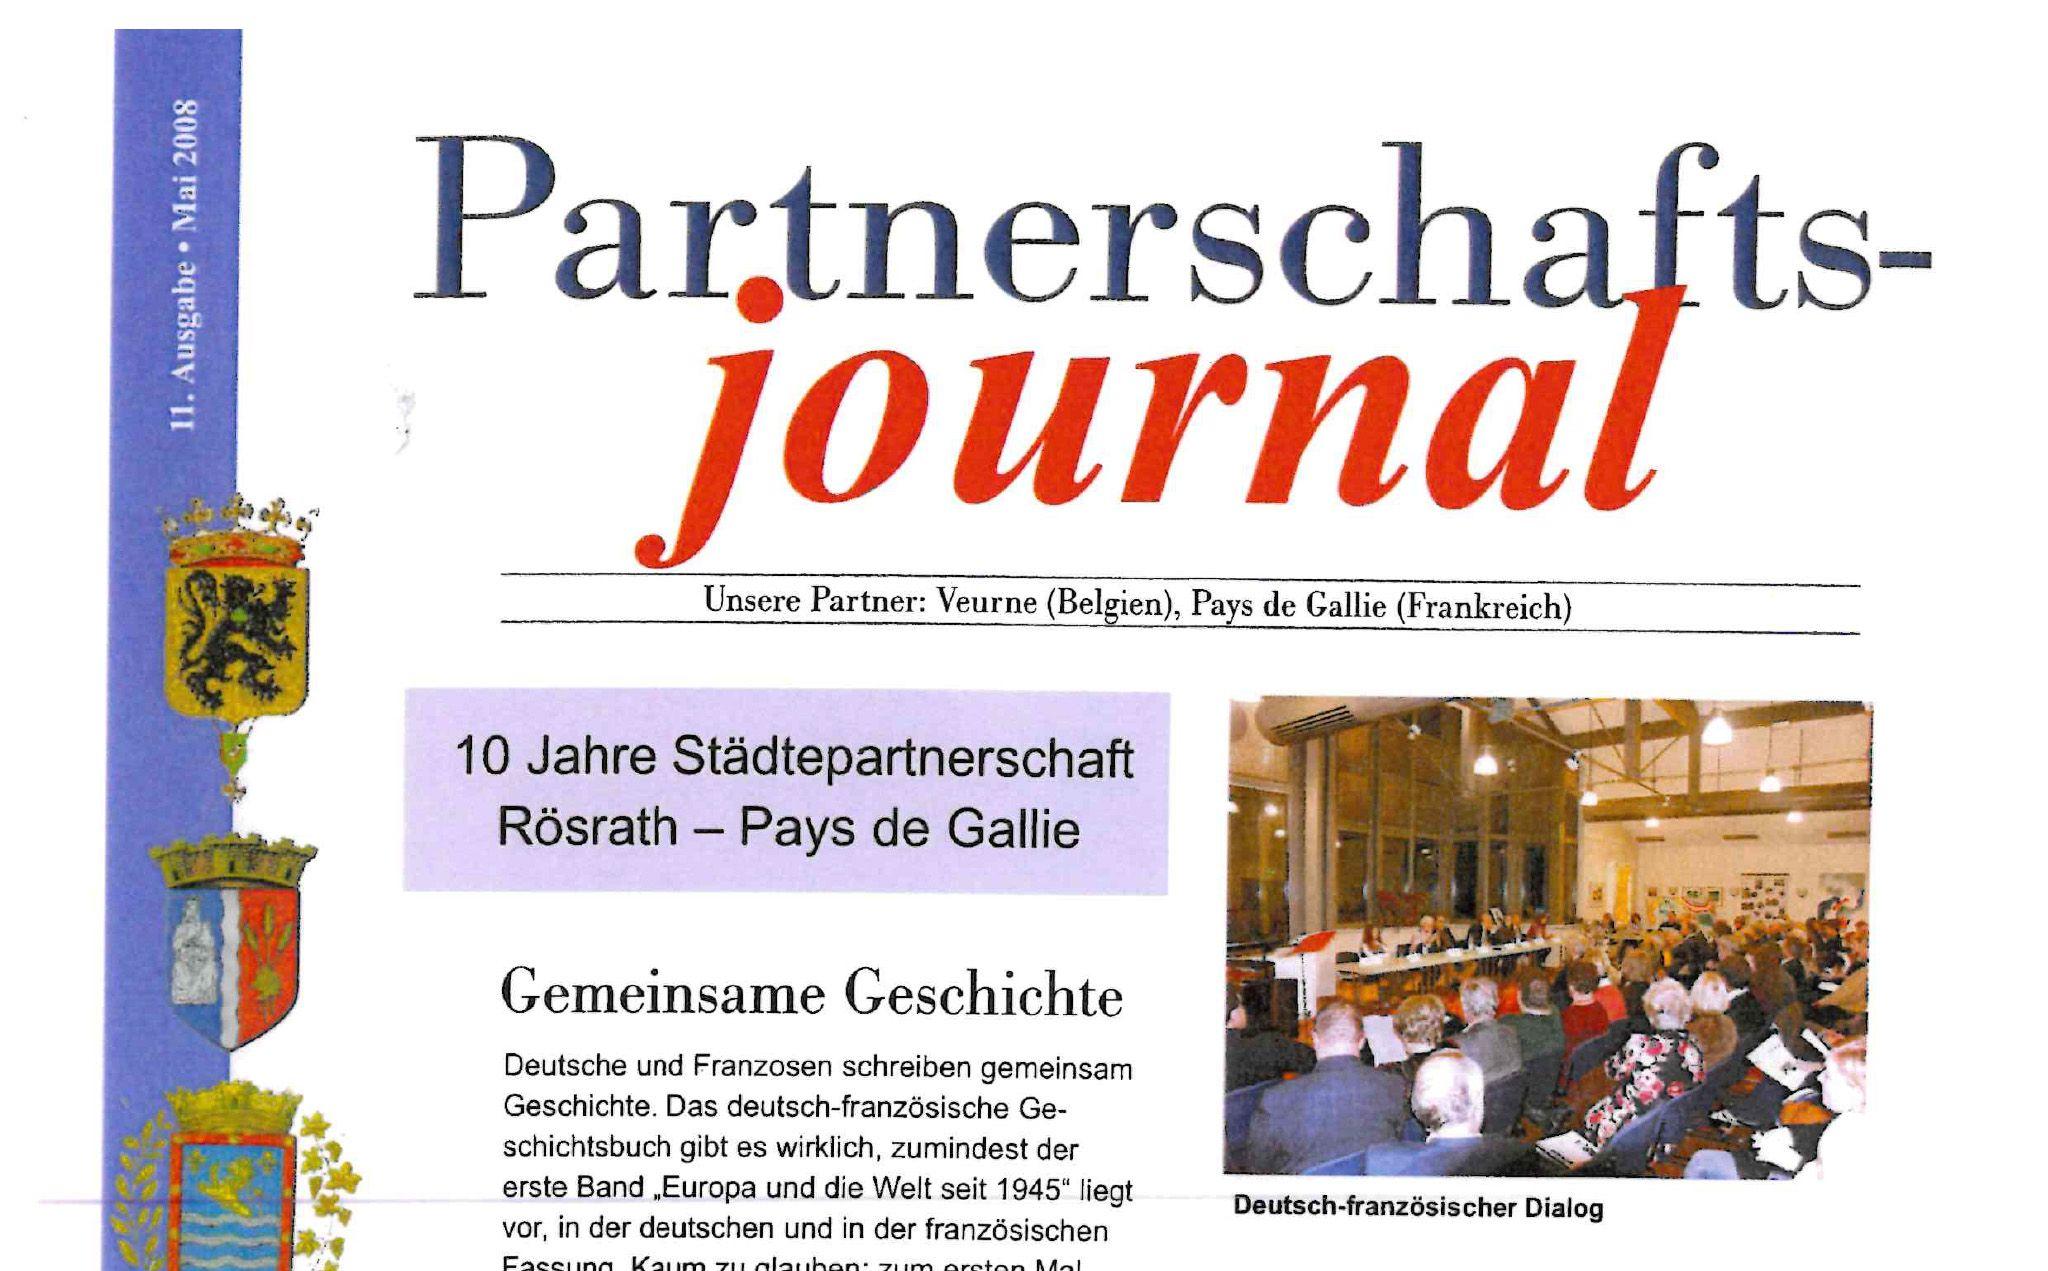 Vorschaubild für den Artikel Partnerschaftsjournal - Ausgabe 11